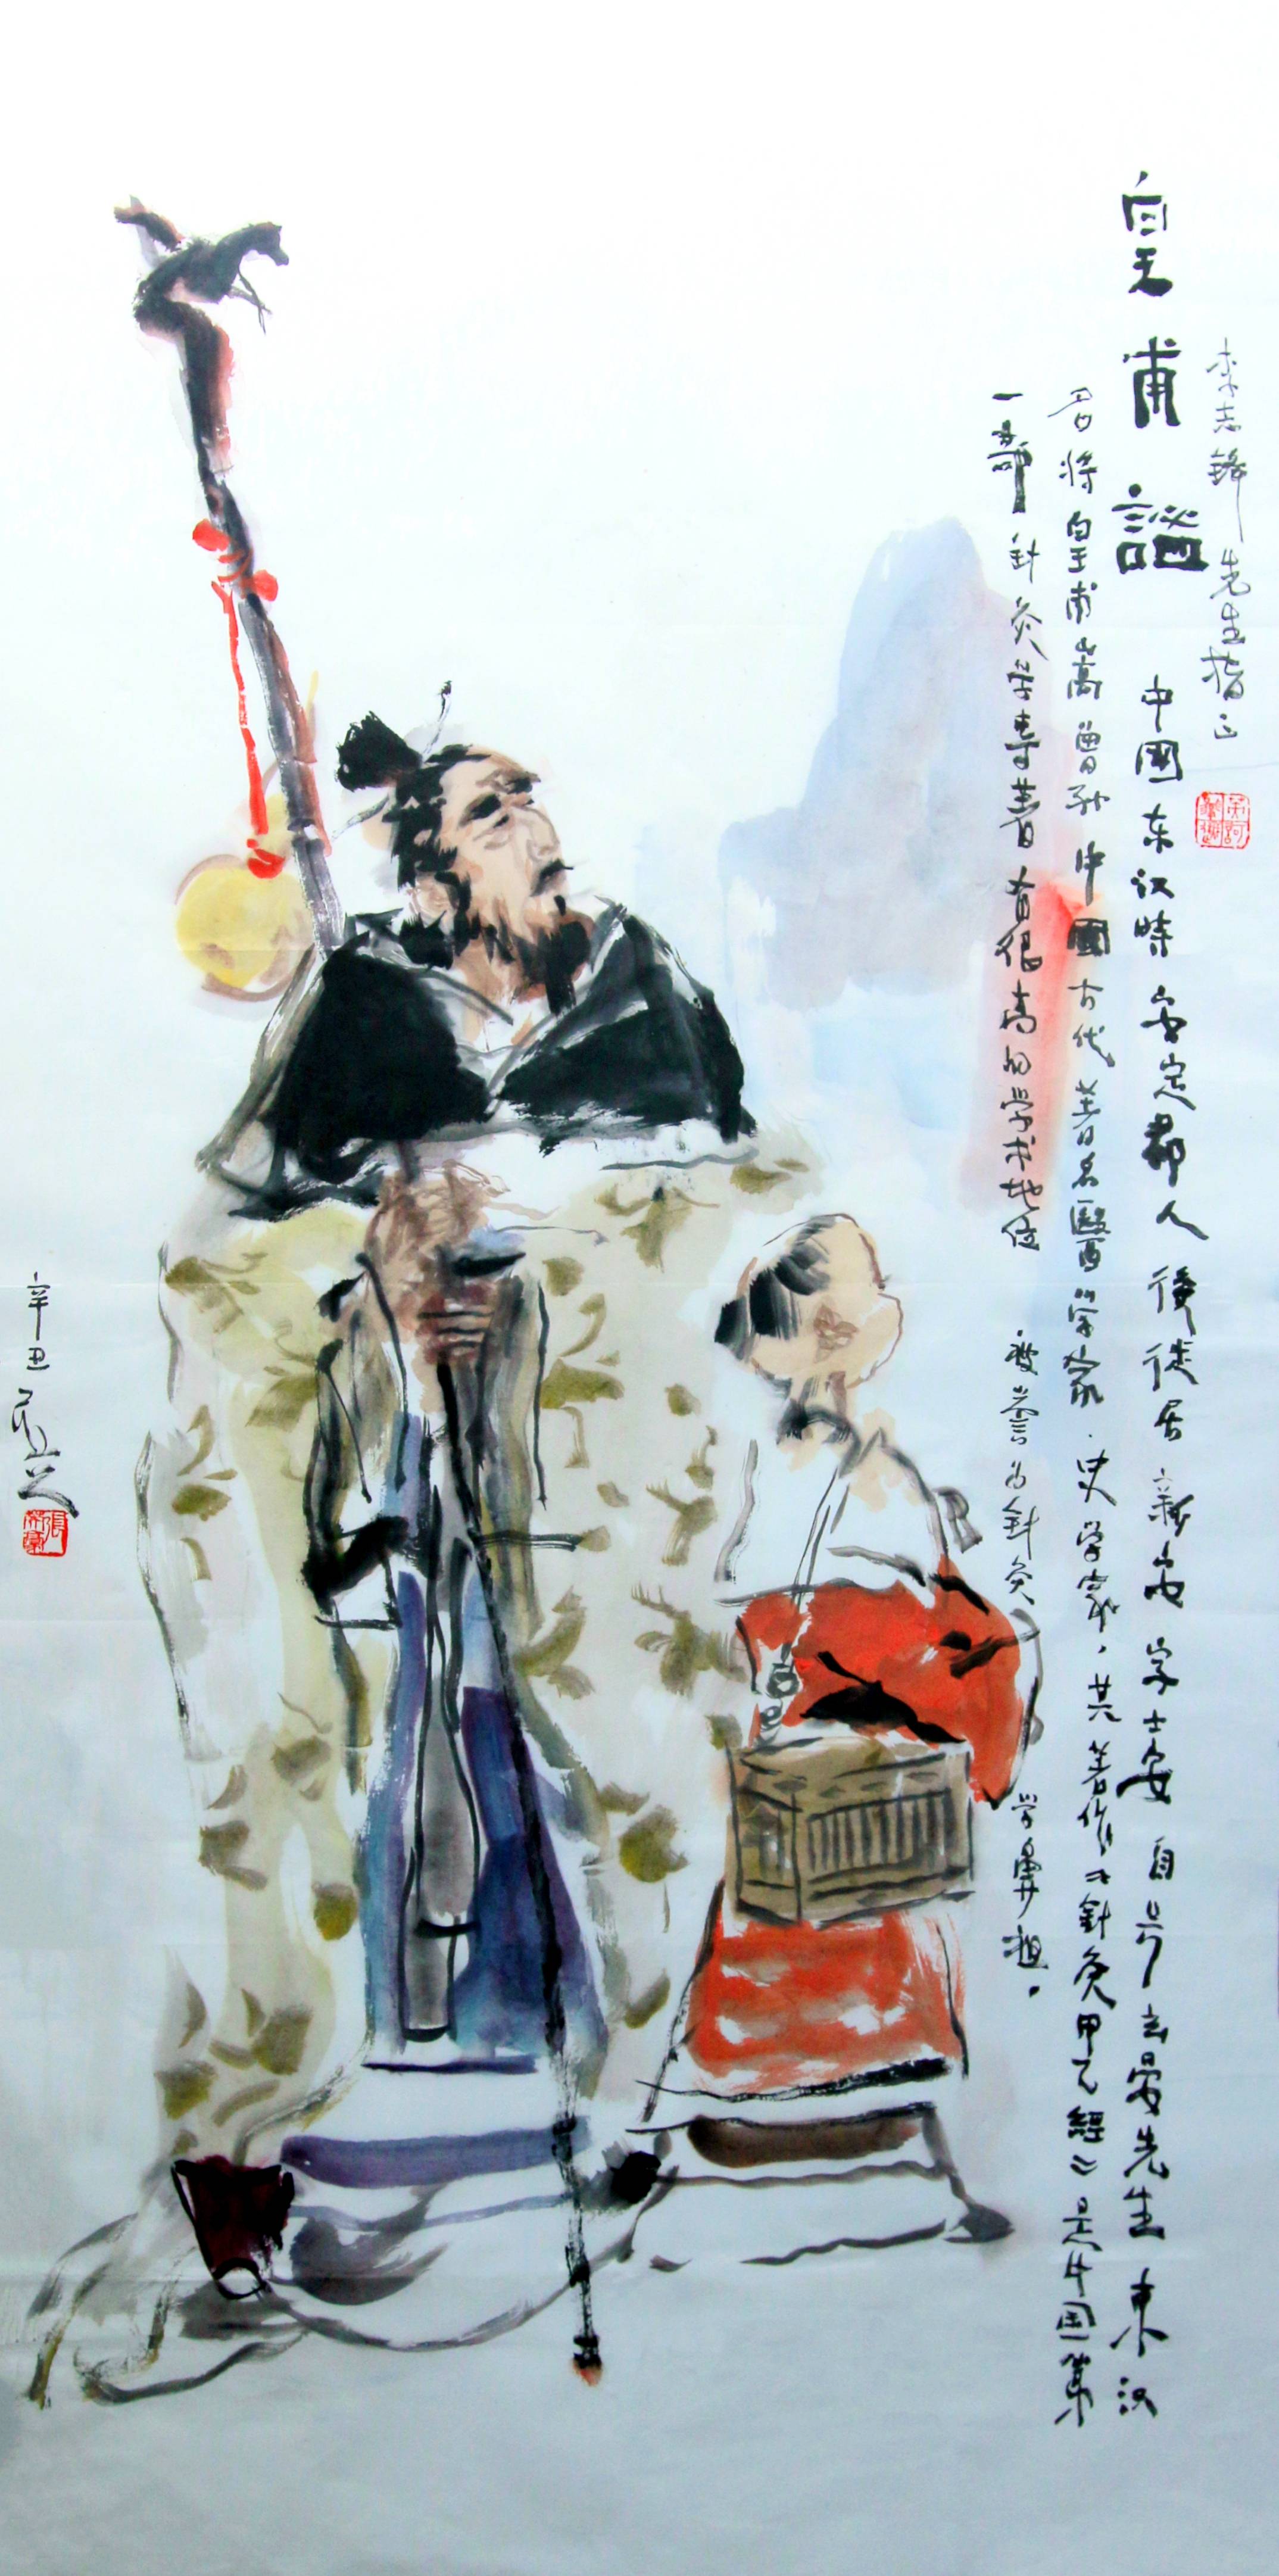 张英豪绘画《皇甫谧针灸》组图